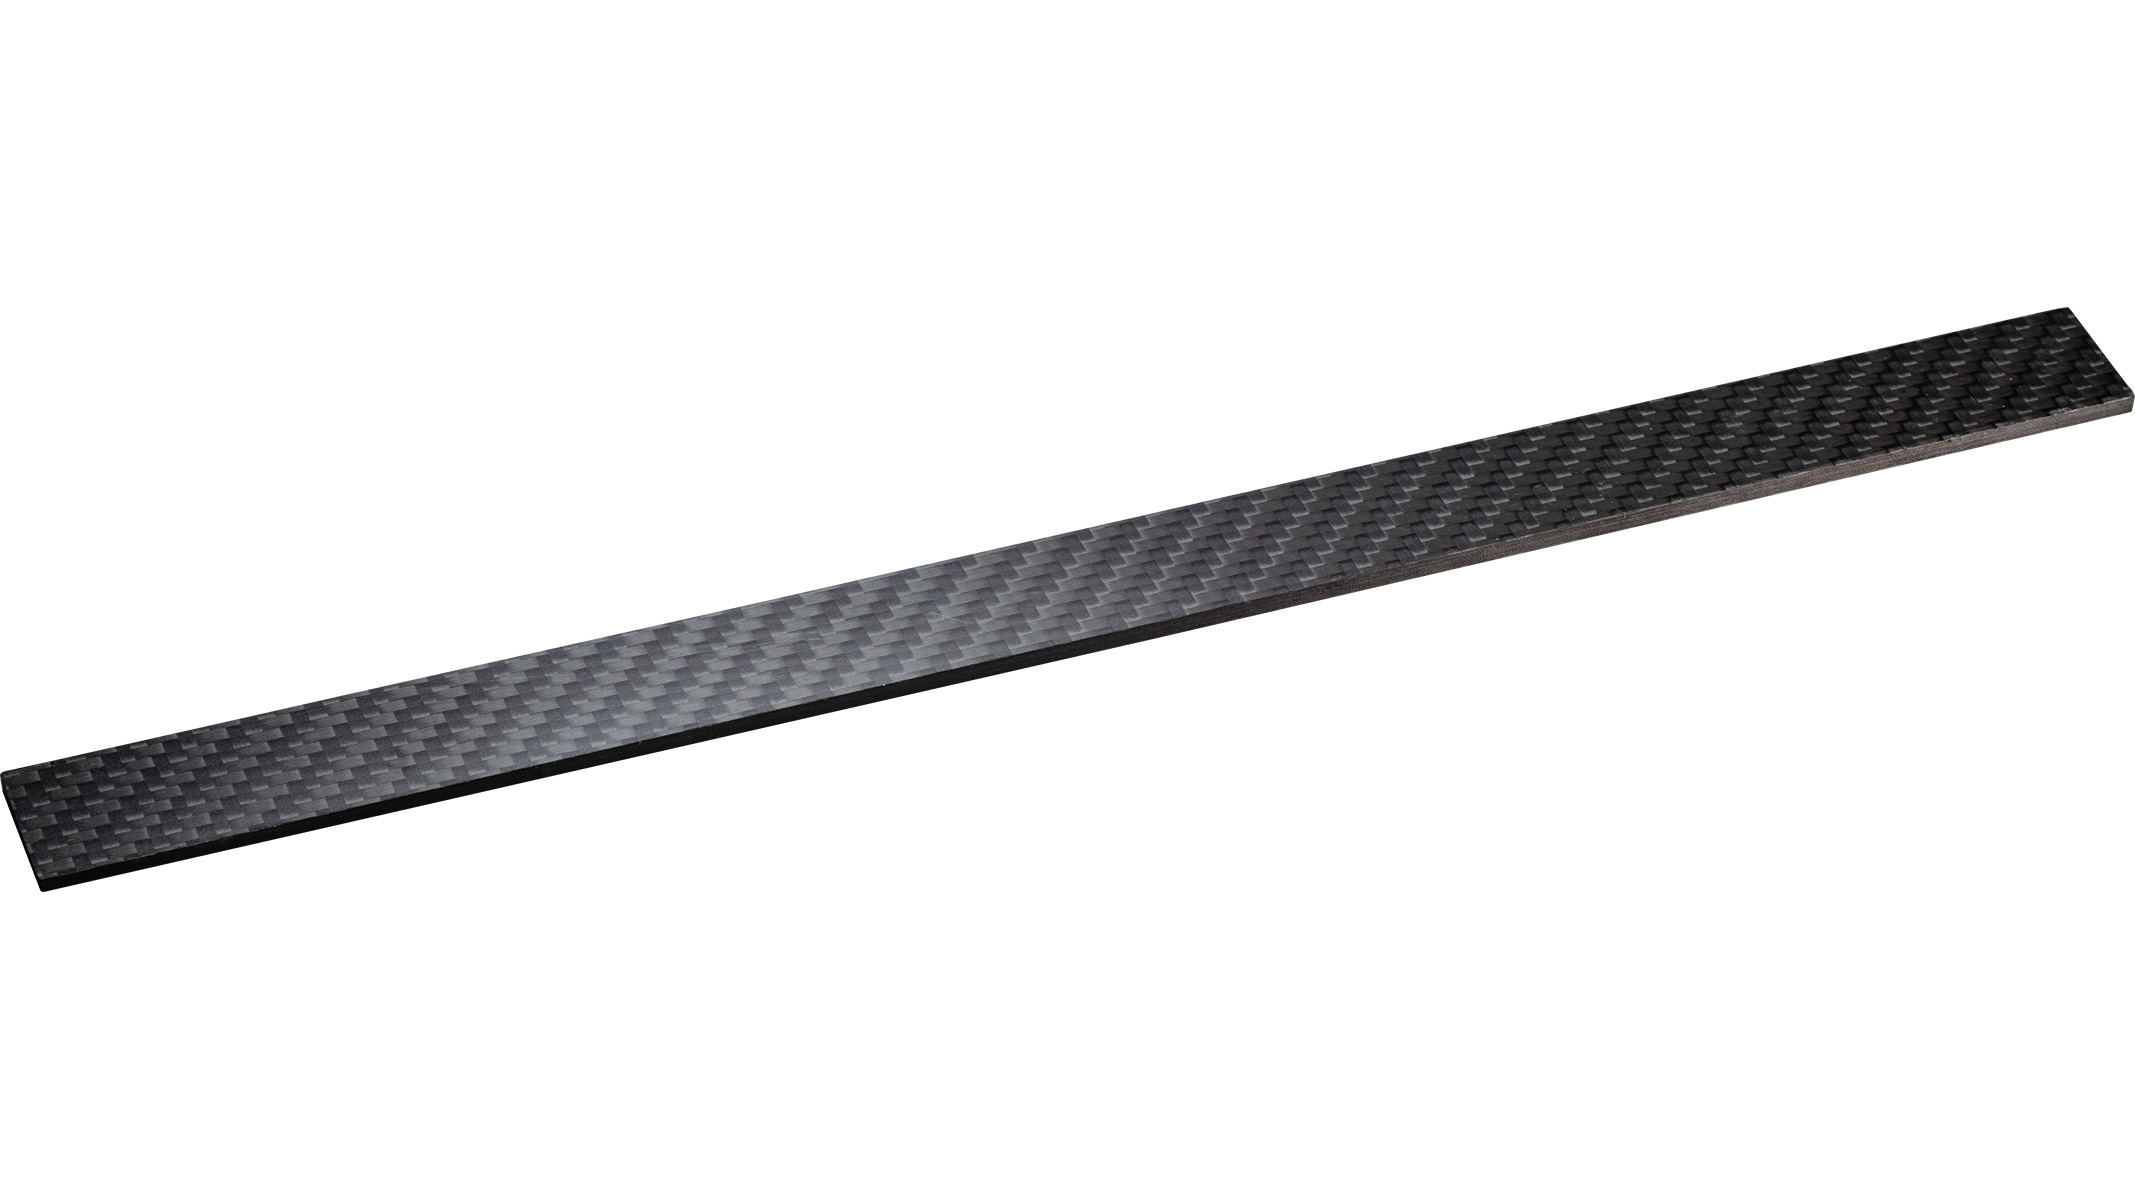 Carbon schuurbanddrager, vlak, lengte 290 mm, licht, zwart